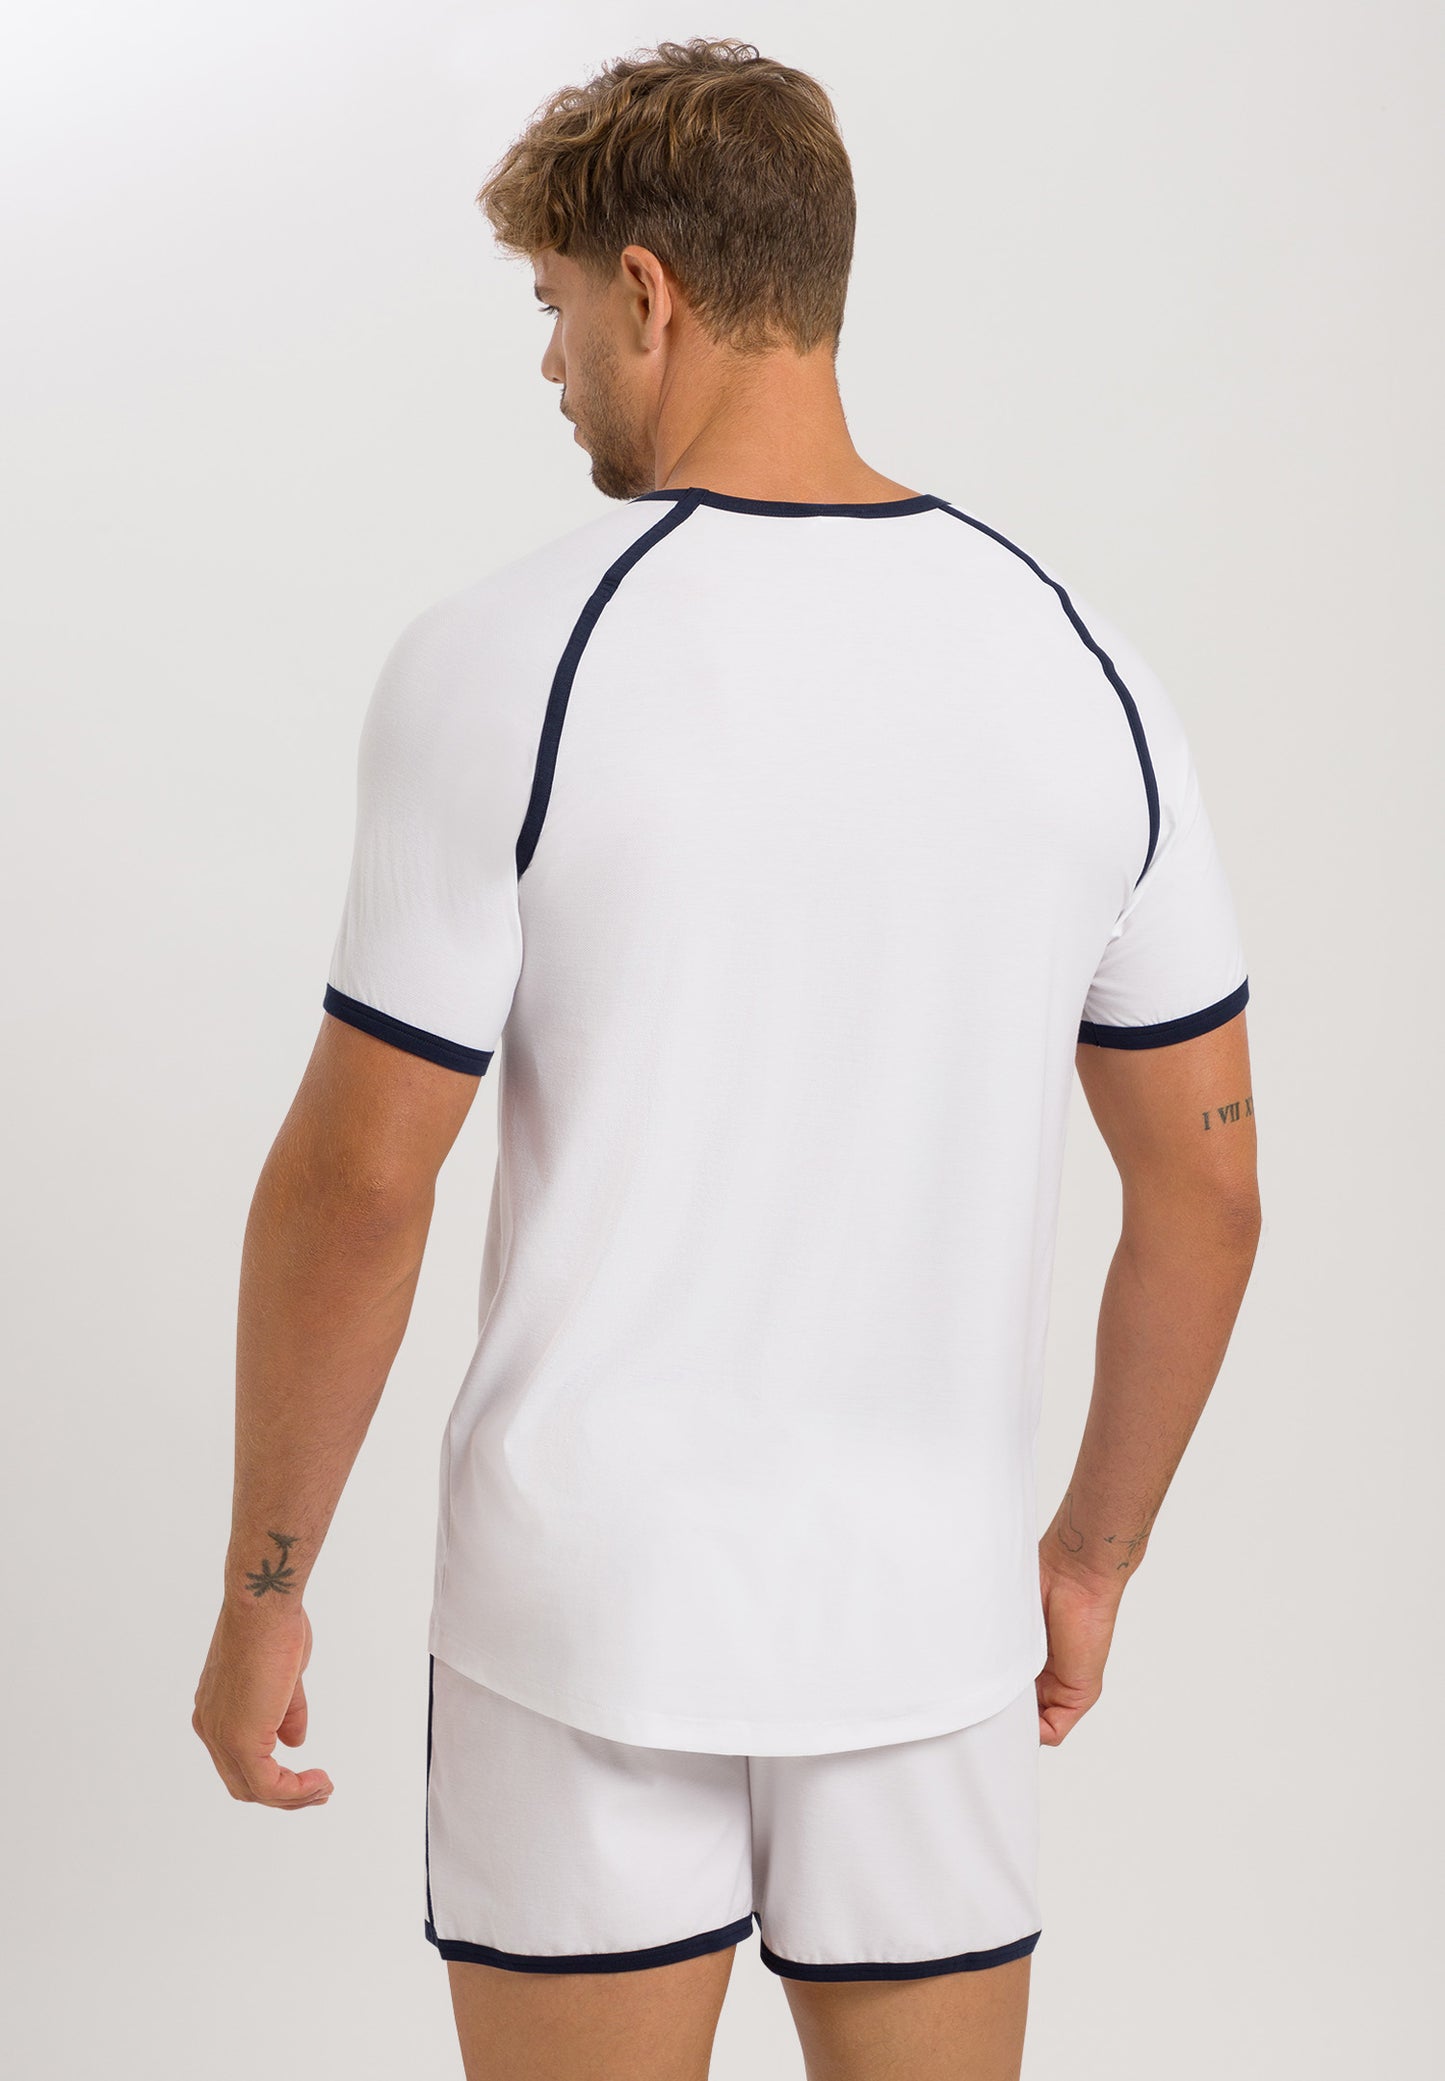 Pierre - Short Sleeve V-Neck Shirt